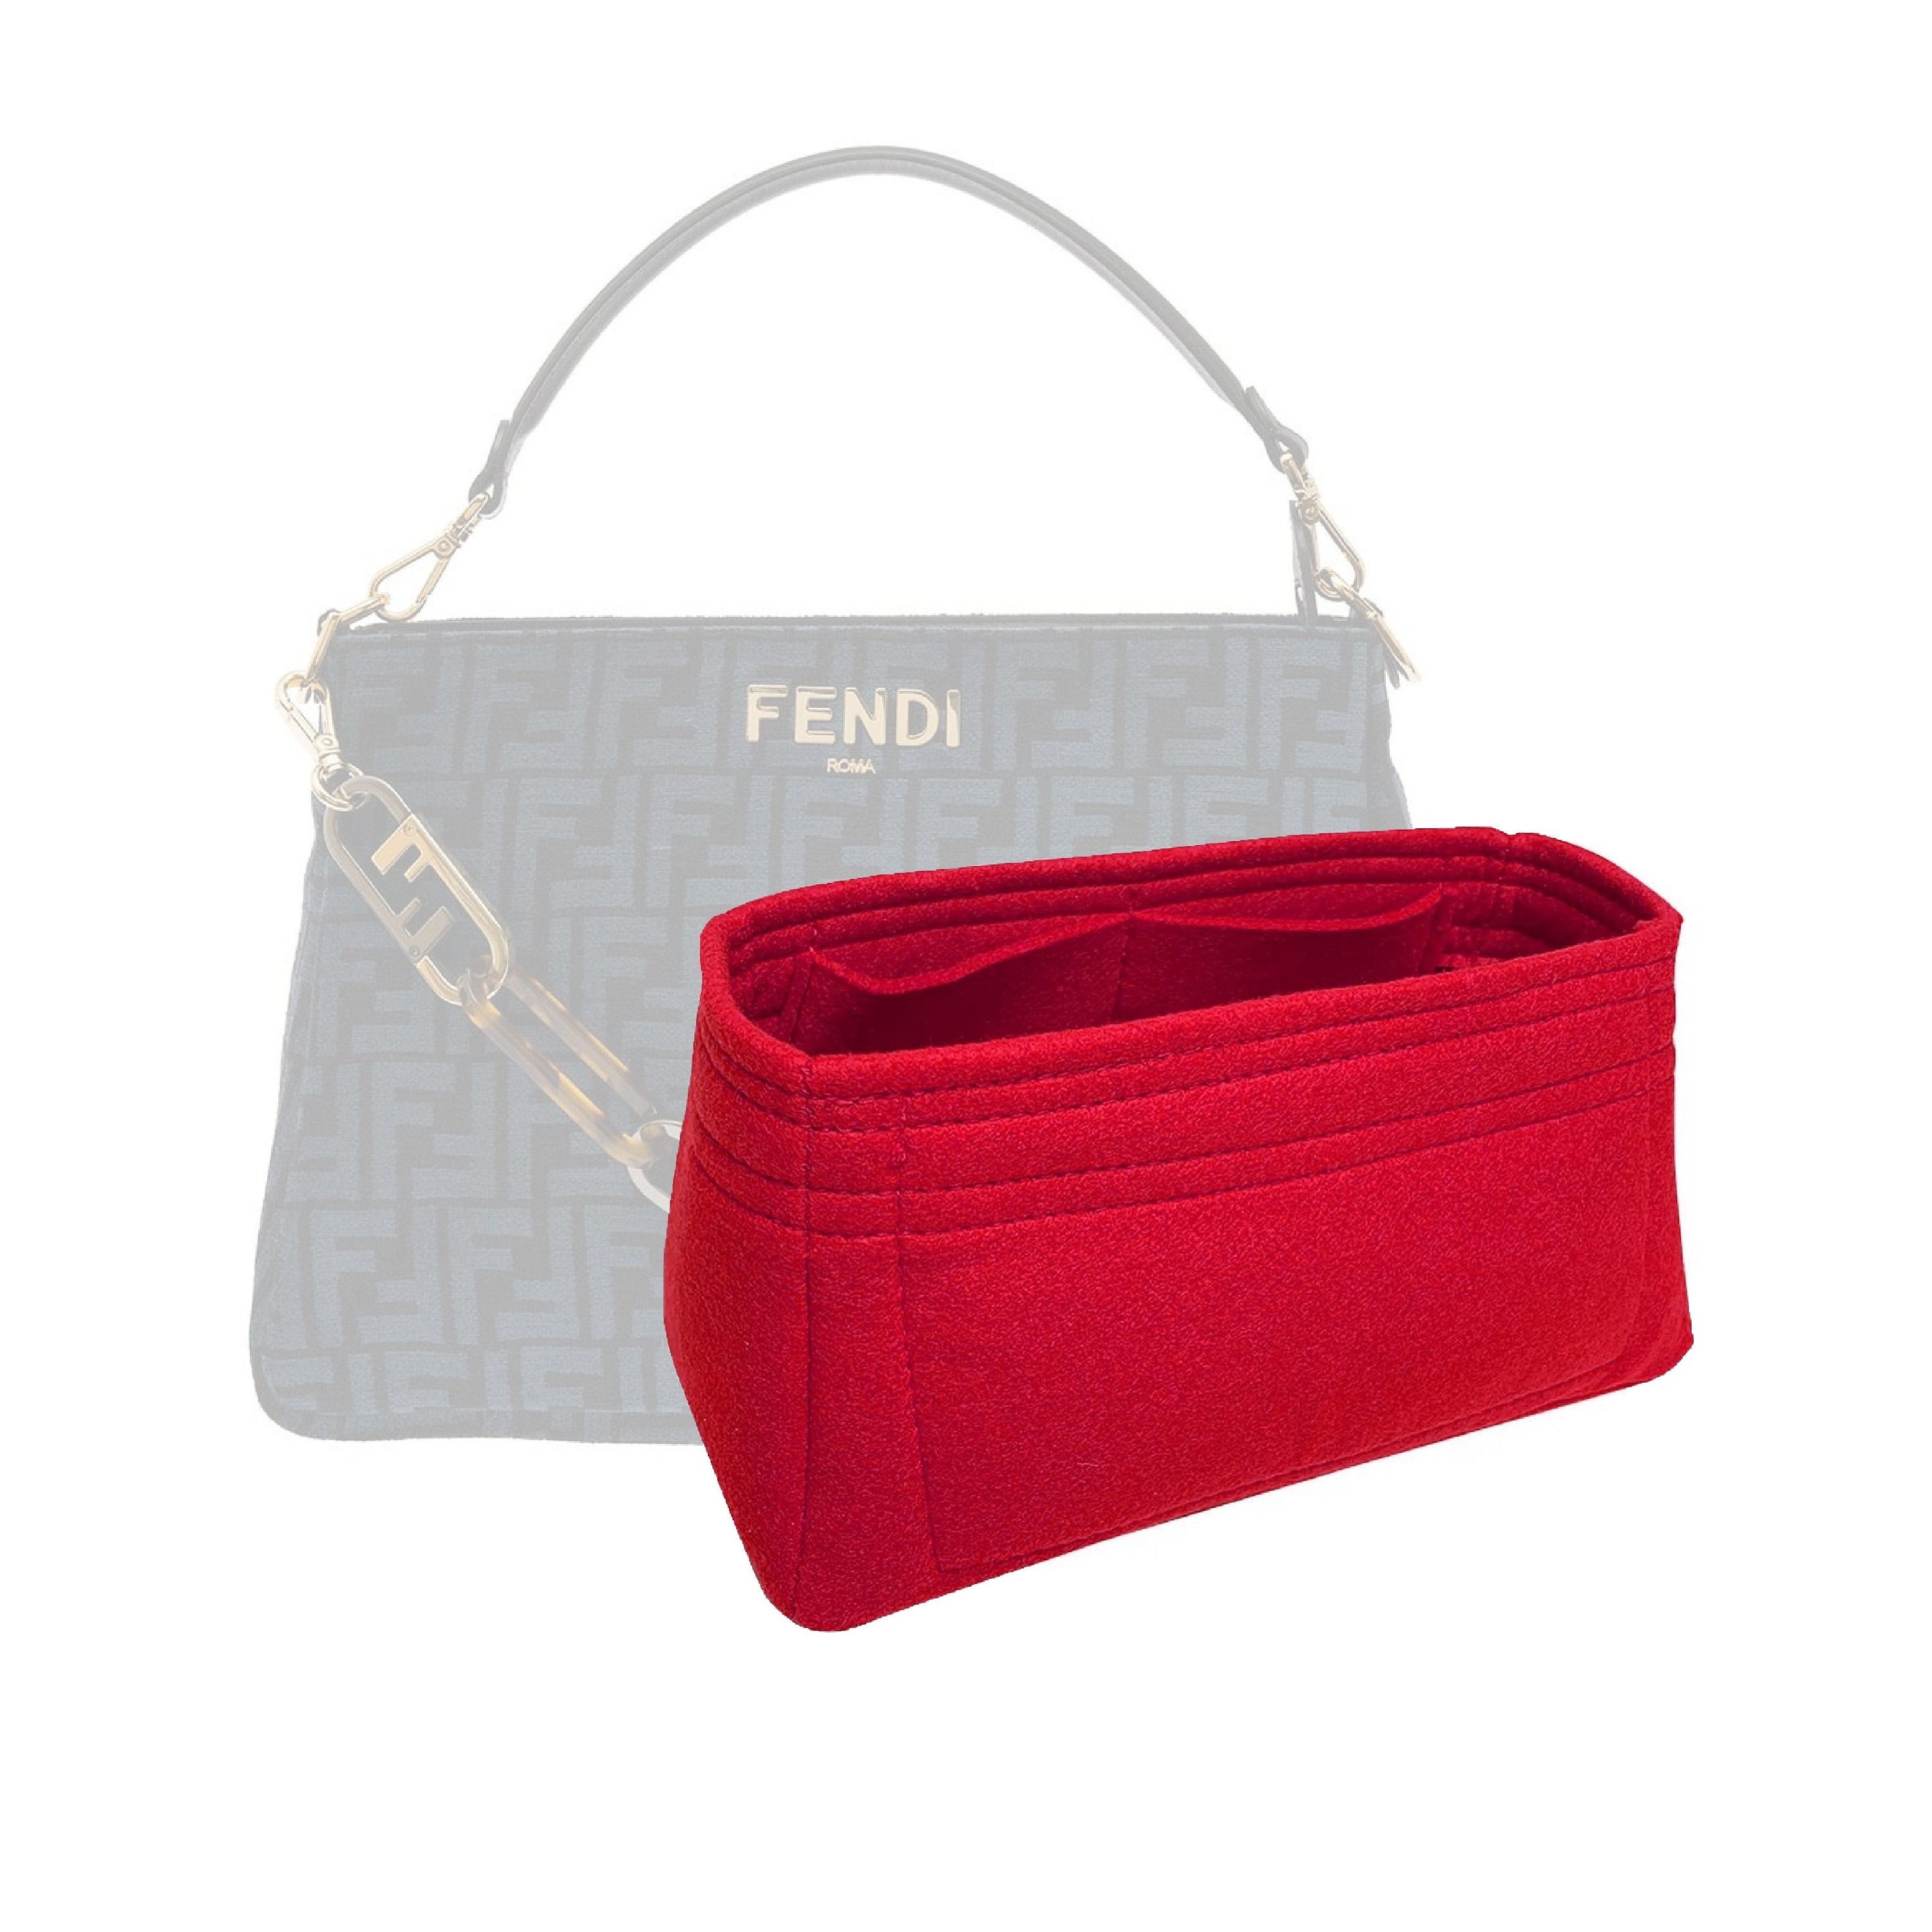 Peekaboo iseeu cloth handbag Fendi Navy in Cloth - 34476538